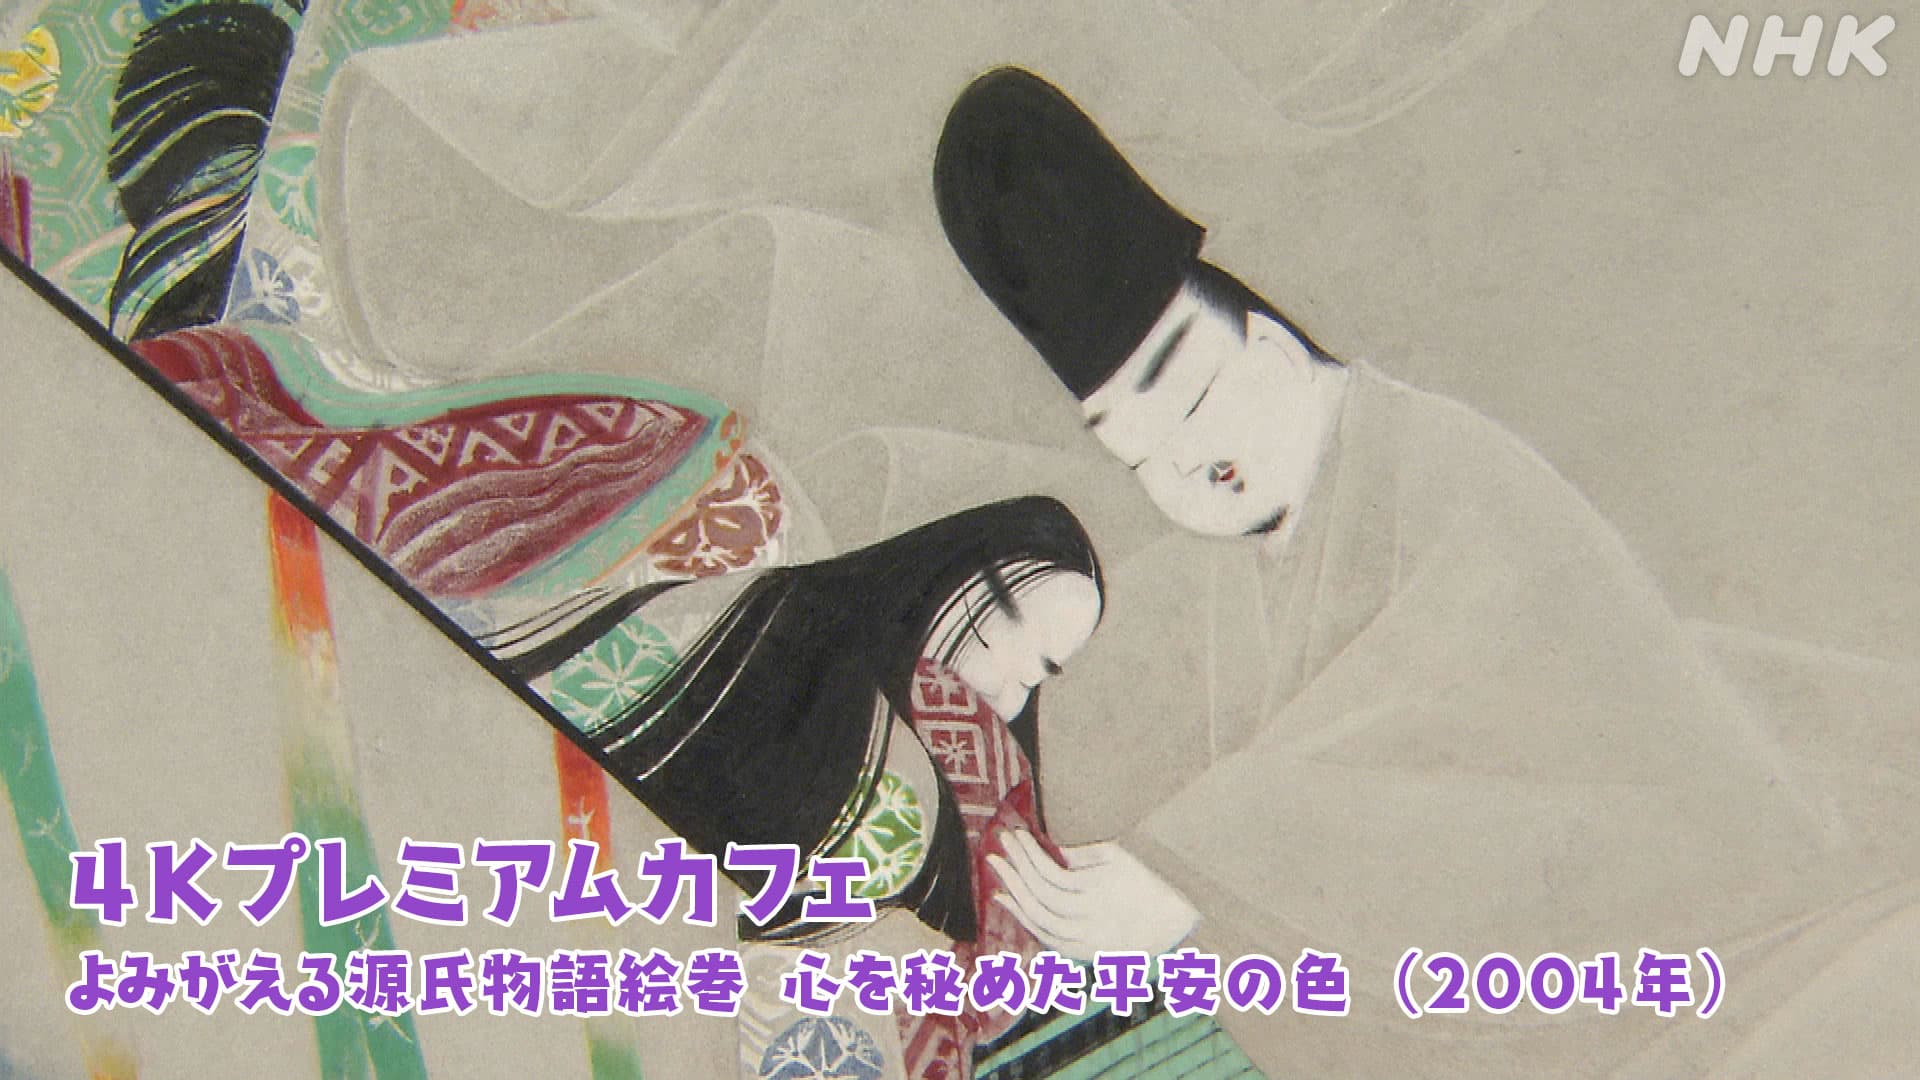 よみがえる源氏物語絵巻 平安の人々が色に寄せた繊細な美意識 | NHK